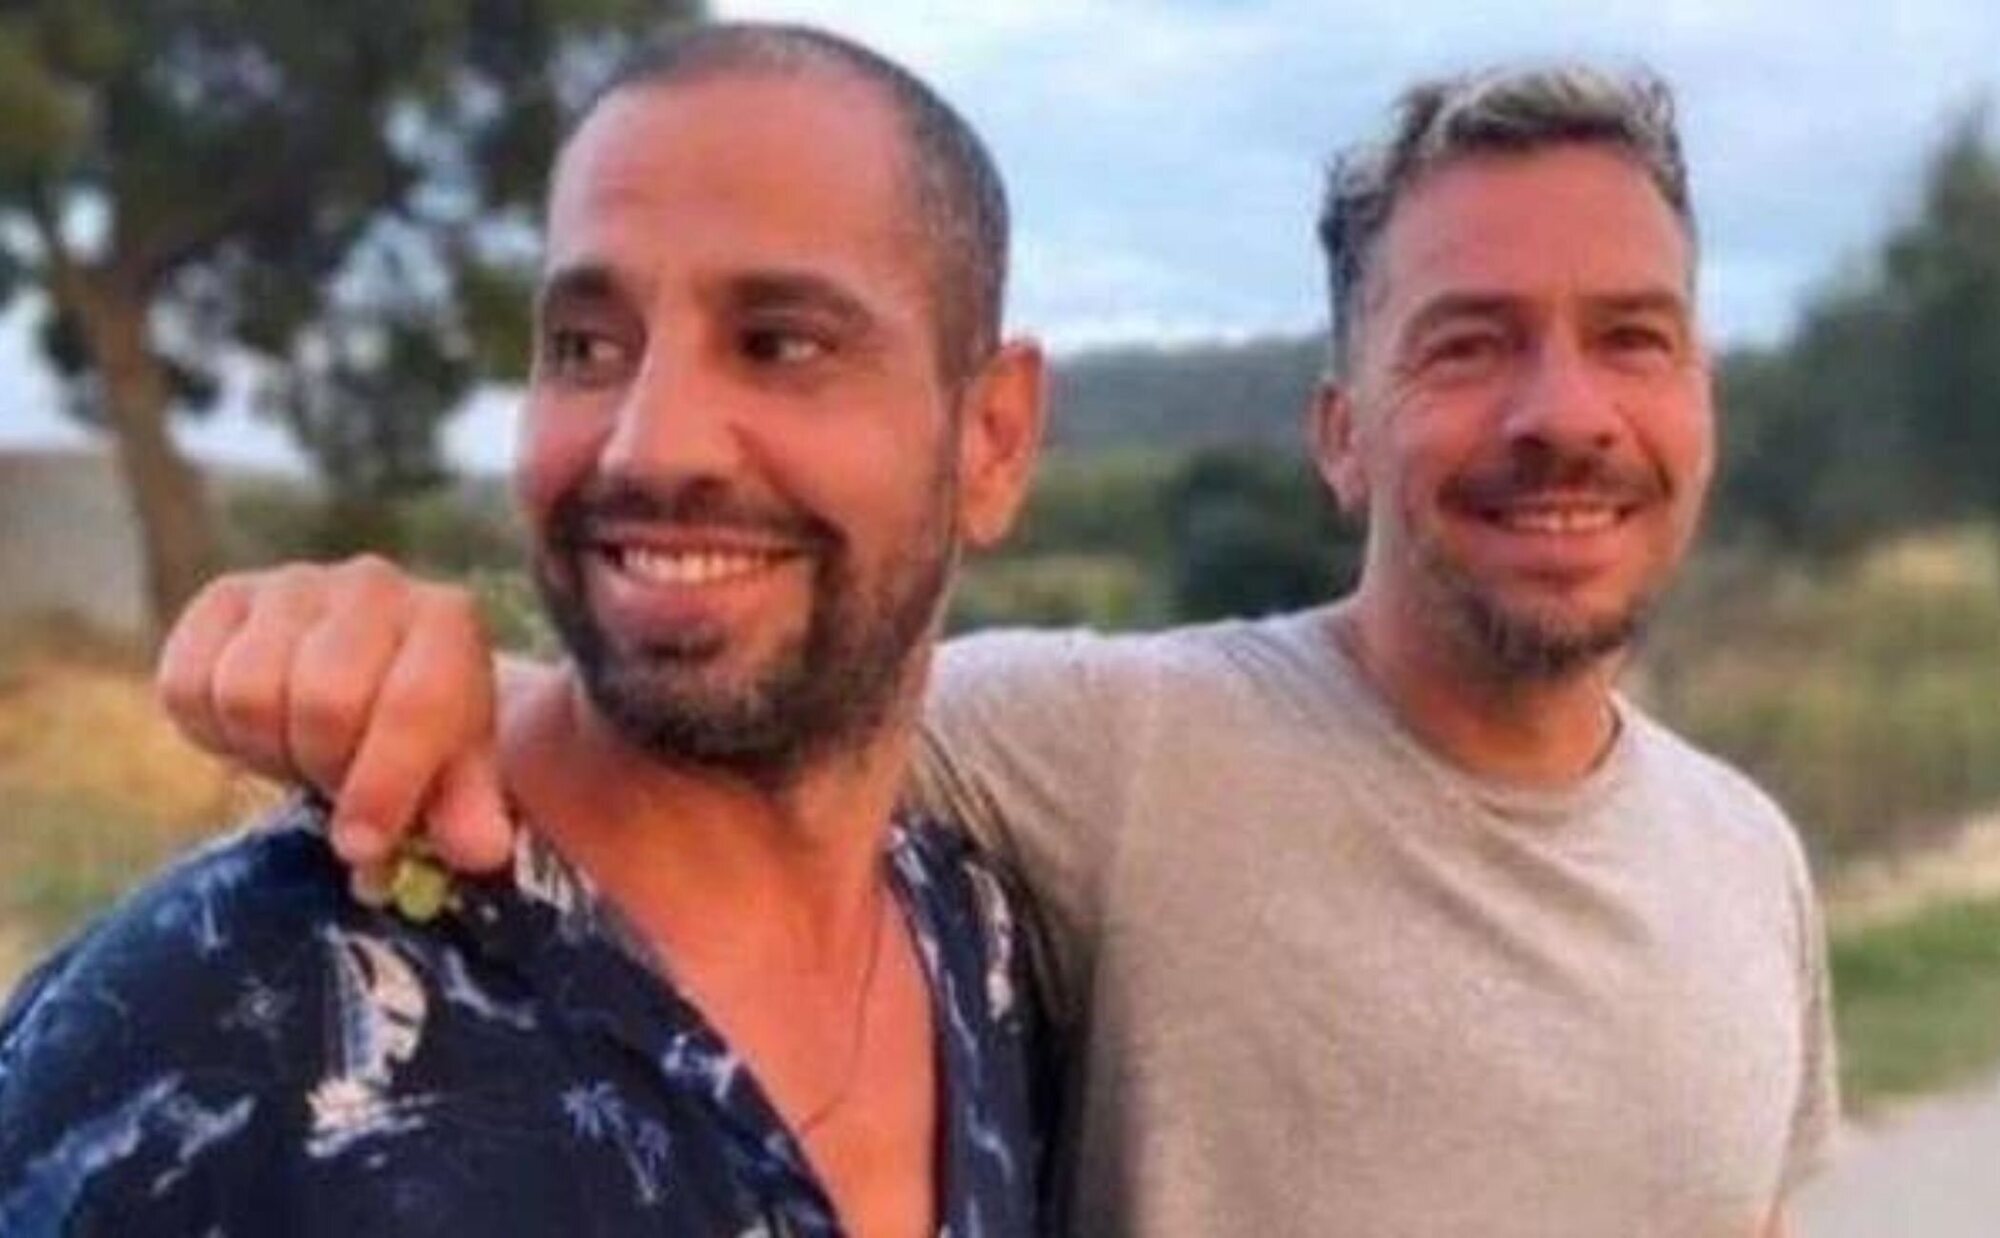 Nacho Palau y Cristian Villela rompen su relación sentimental después de varias crisis y el "desgaste"